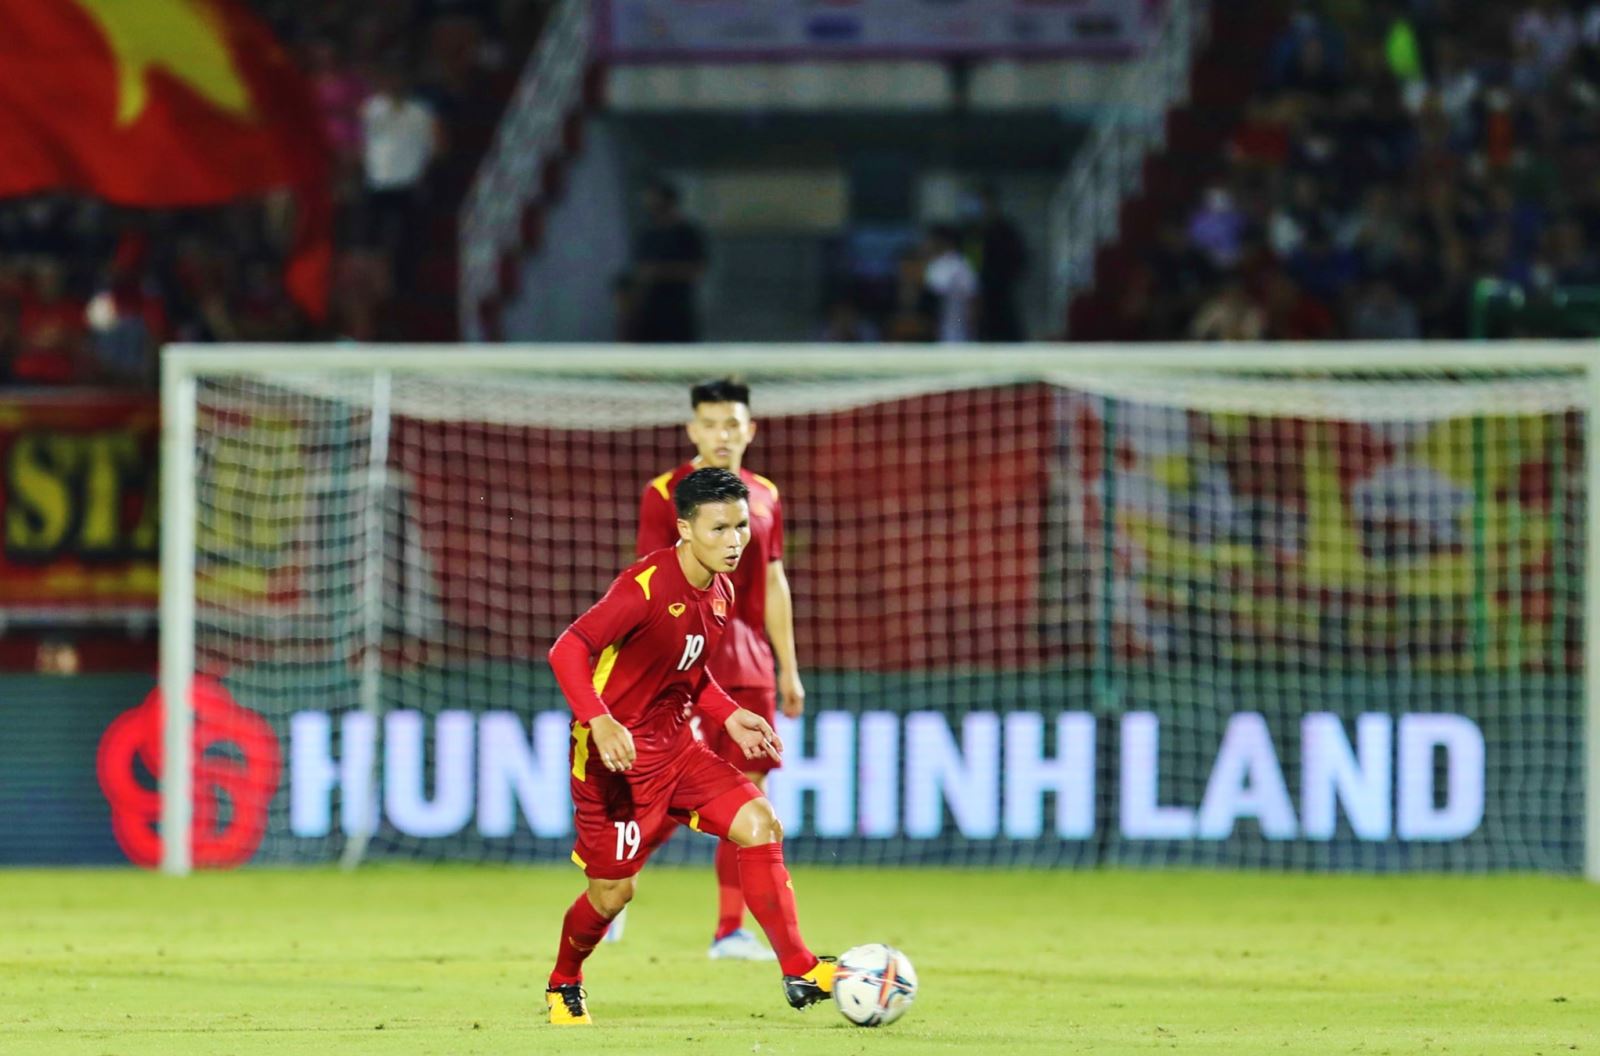 AFF Cup 2022 của Quang Hải: AFF Cup 2022 sẽ là giải đấu lớn nhất trong năm và Quang Hải đang là một trong những cầu thủ được kỳ vọng sẽ giúp ĐT Việt Nam vô địch giải đấu này. Nếu bạn là một fan cuồng nhiệt của bóng đá Việt Nam và muốn khám phá những hình ảnh đẹp nhất của Quang Hải trong giải đấu này, hãy xem những bức hình chụp trong trận đấu của anh.